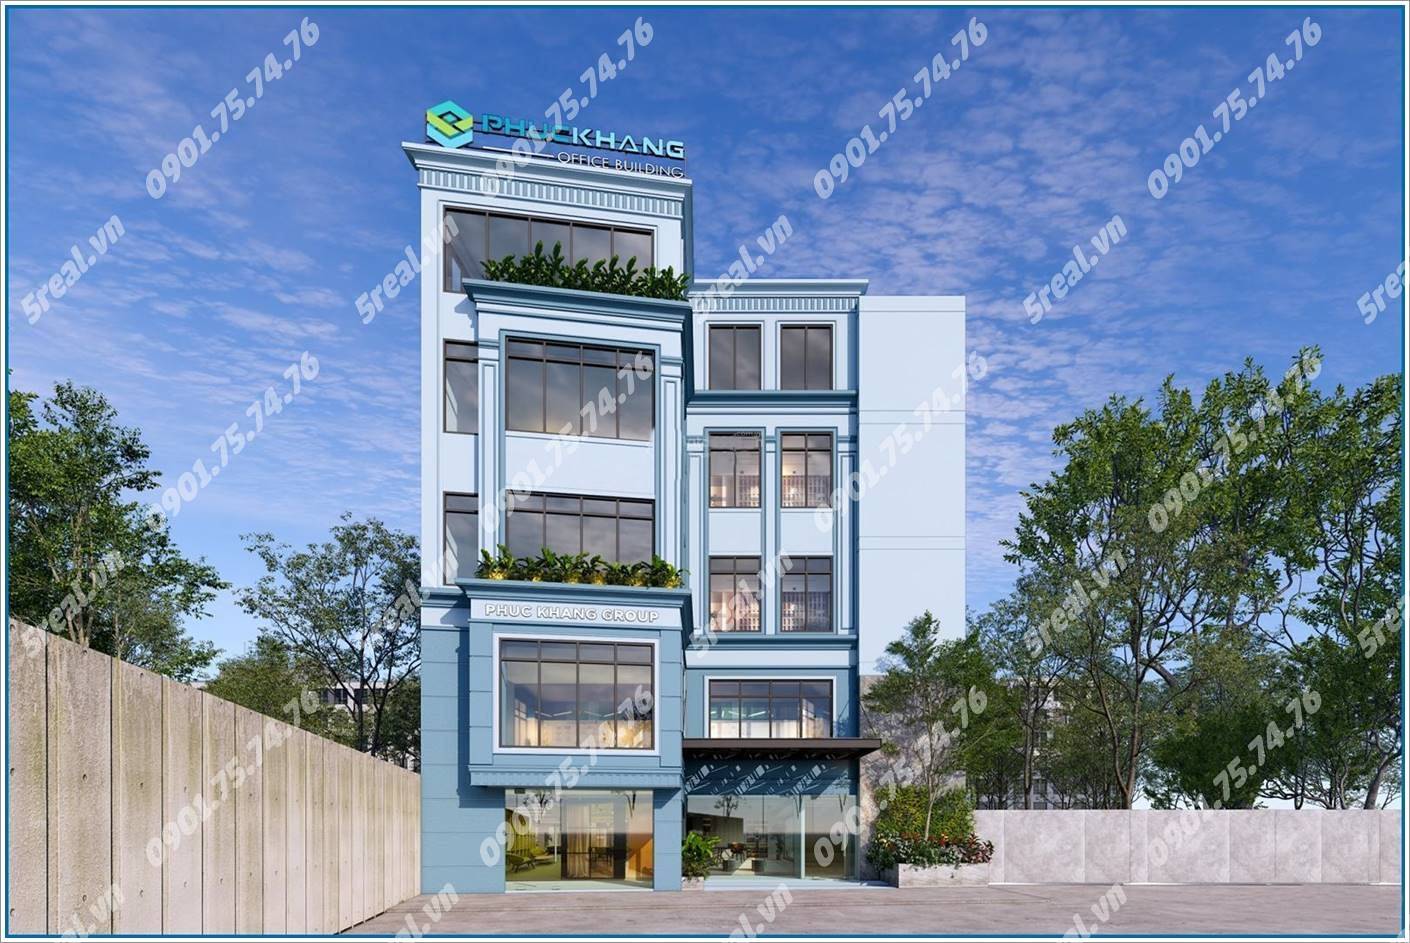 phuc-khang-office-building-ly-chinh-thang-cho-thue-van-phong-quan-3-5real.vn-01